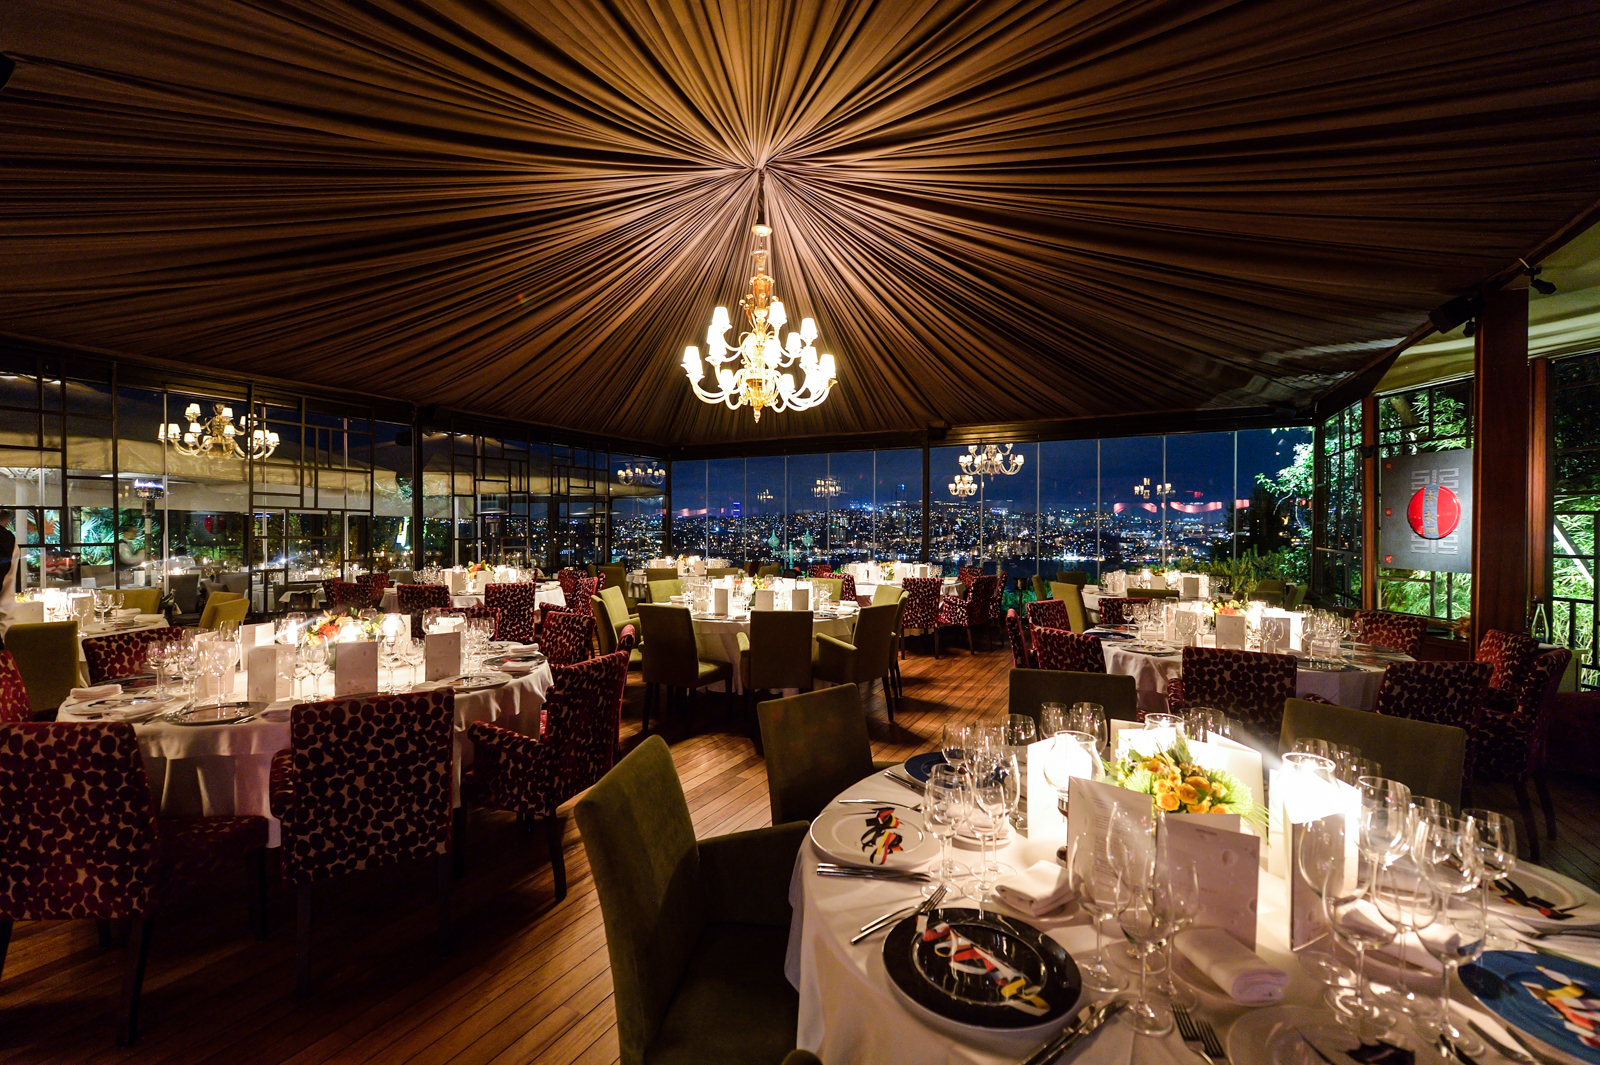 İstanbulda kendinizi şımartabileceğiniz fine dining restoranları - Uplifers...